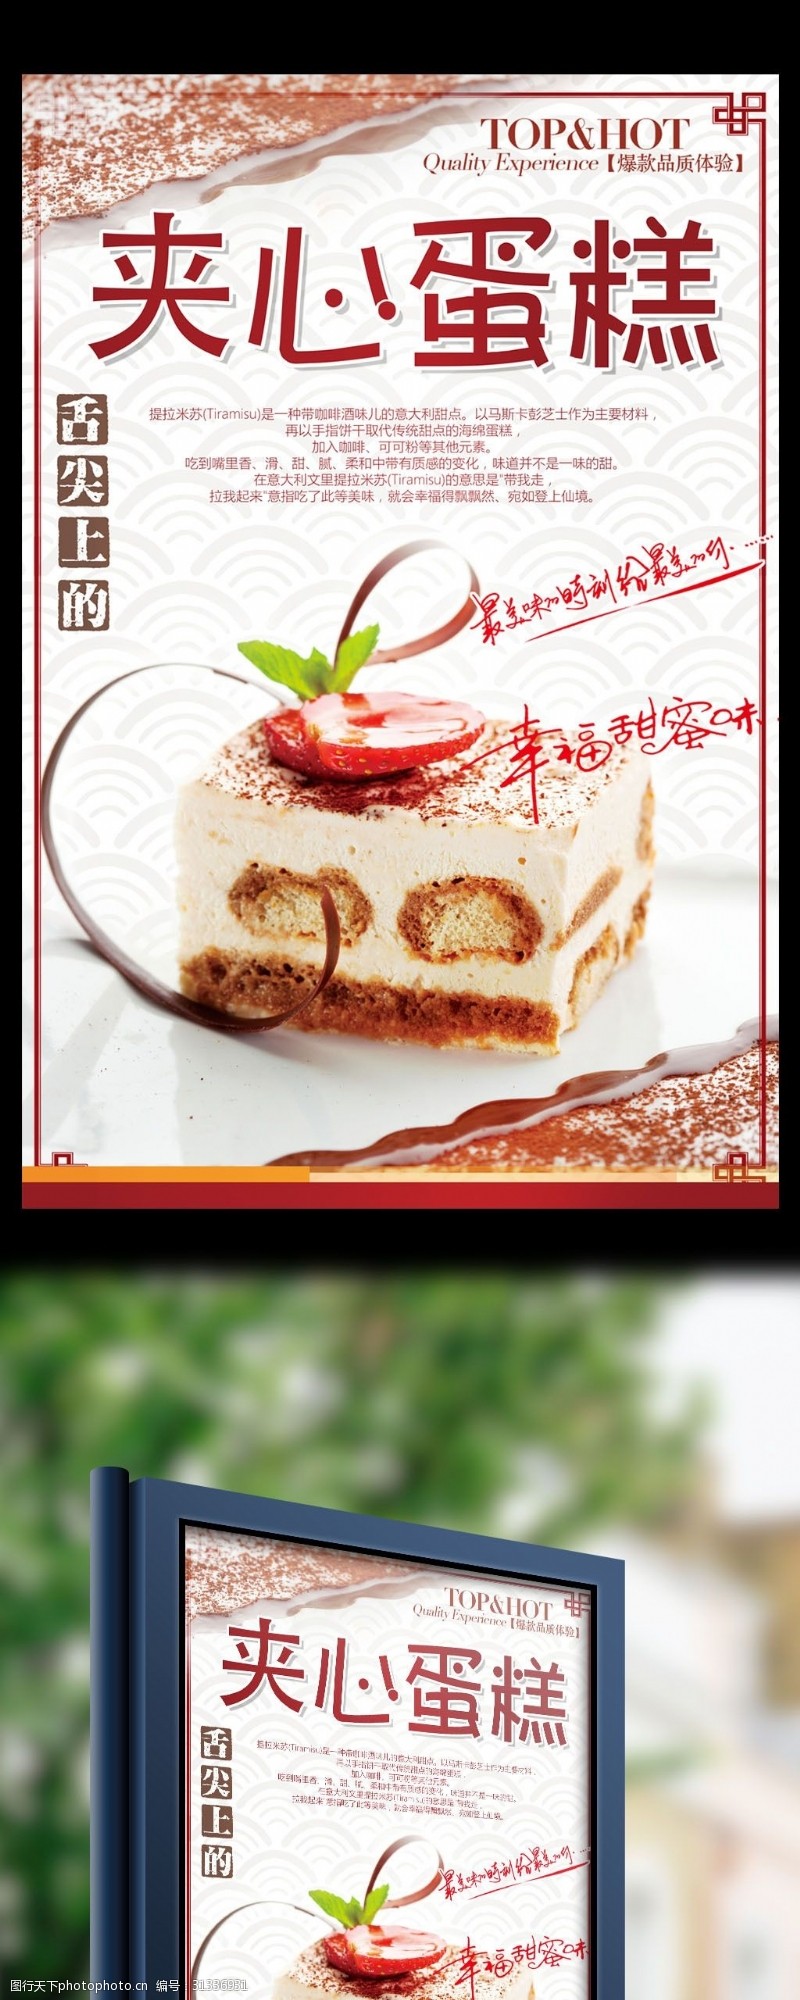 最新清新温暖大气美食甜点夹心蛋糕宣传海报